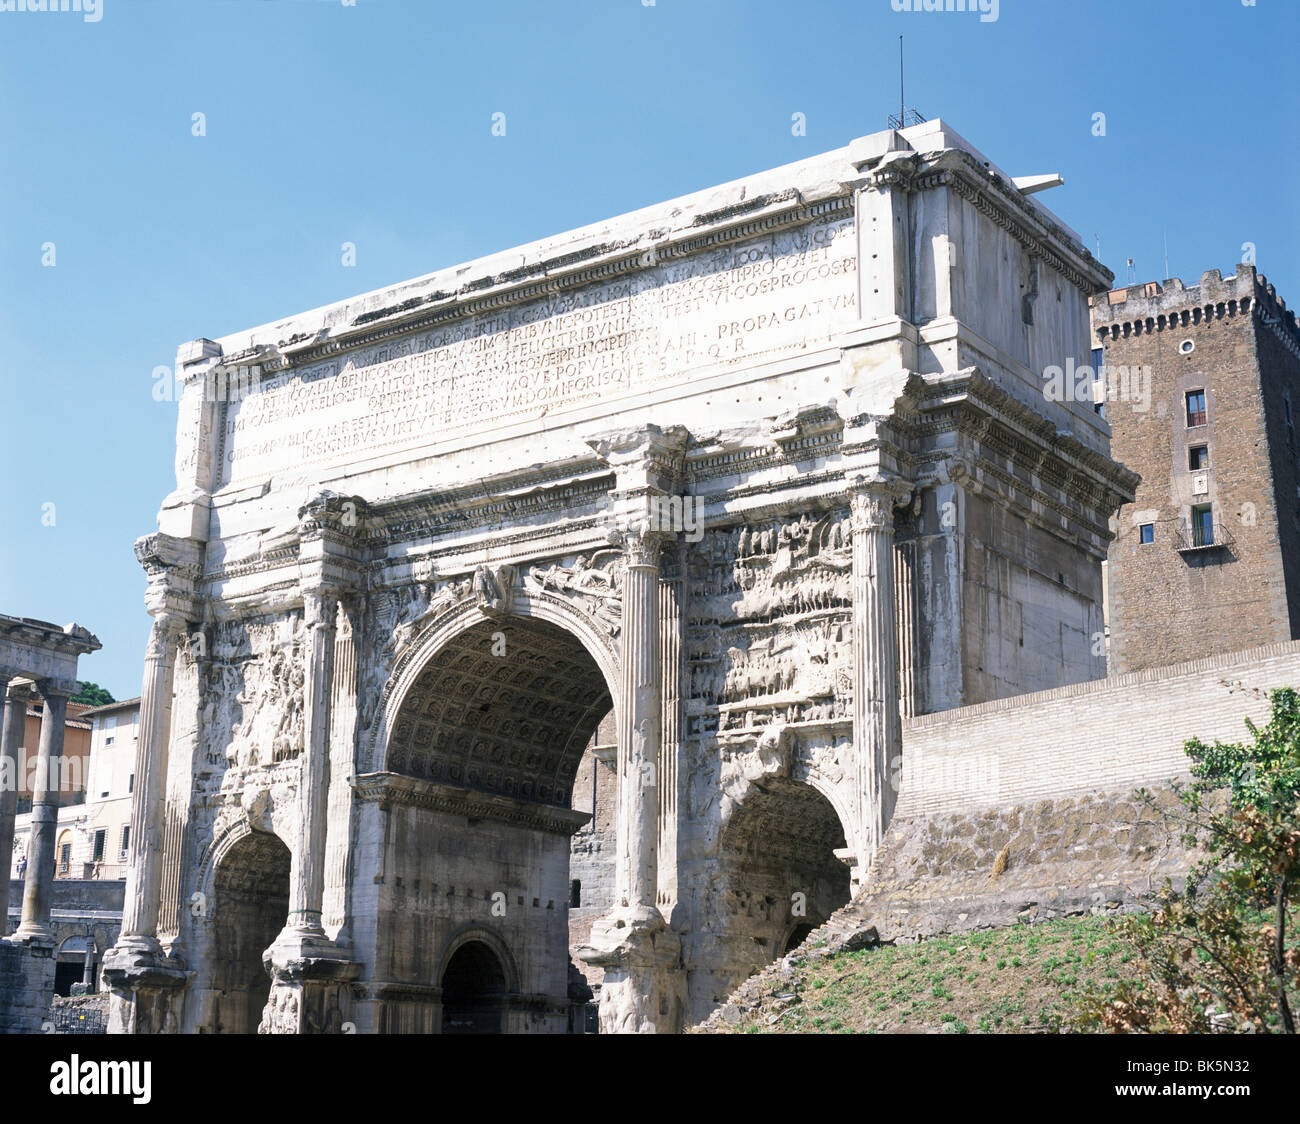 Basso angolo di visione di un arco trionfale, Arco di Settimio Severo, Foro Romano, Roma, Italia Foto Stock